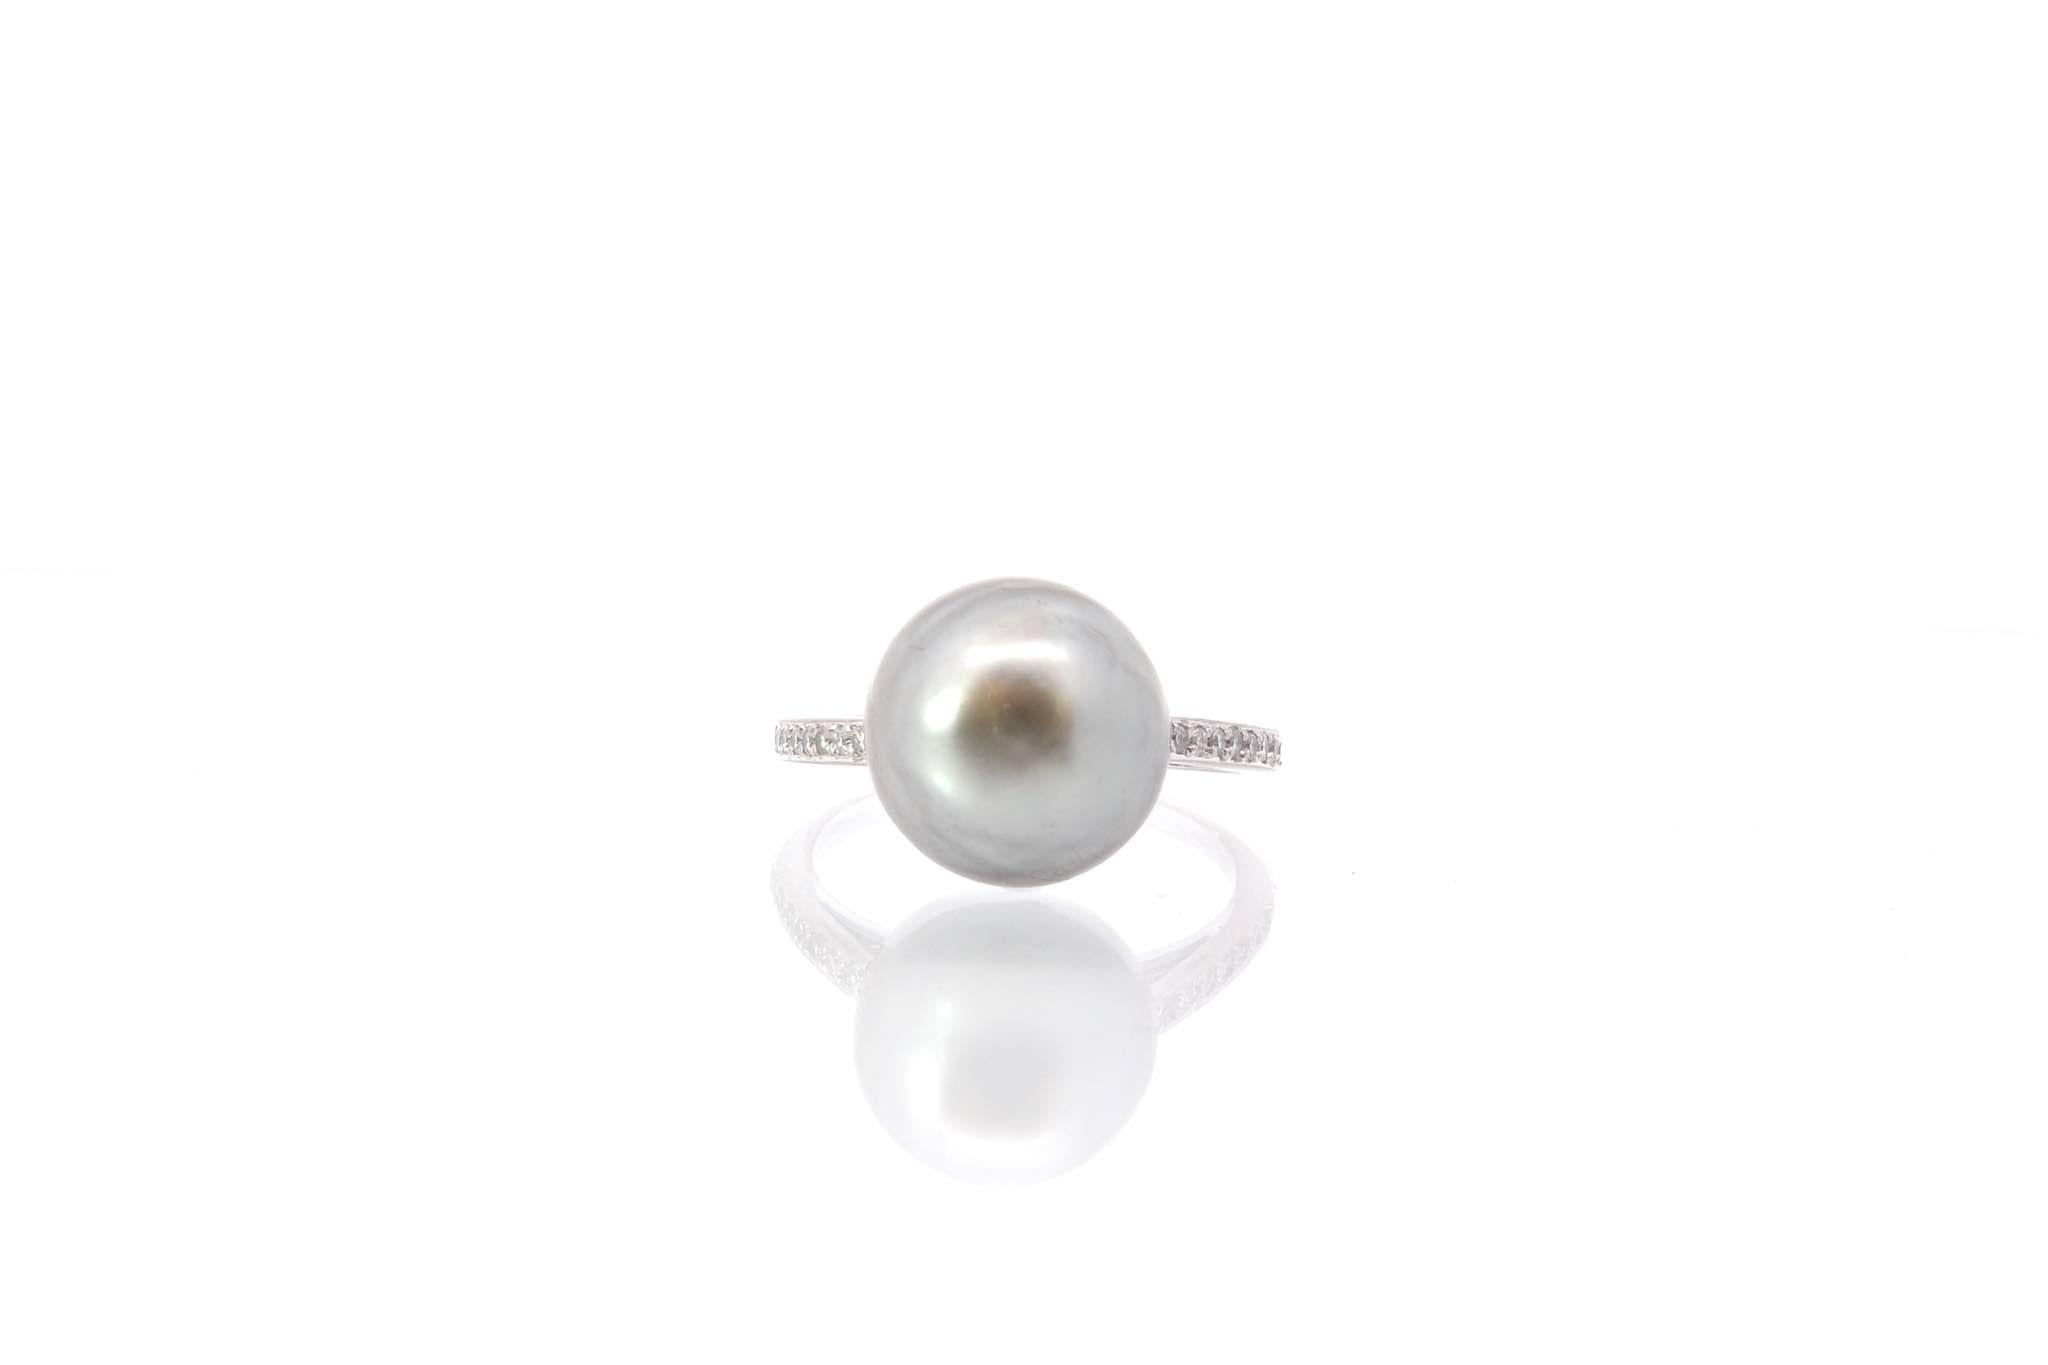 Steine: Tahiti-Perle: 1,2 cm und 20 Diamanten: 0,15 ct
MATERIAL: 18k Weißgold
Gewicht: 5,3 g
Zeitraum: 1980
Größe: 54 (freie Größenwahl)
Zertifikat
Bez. : 25550